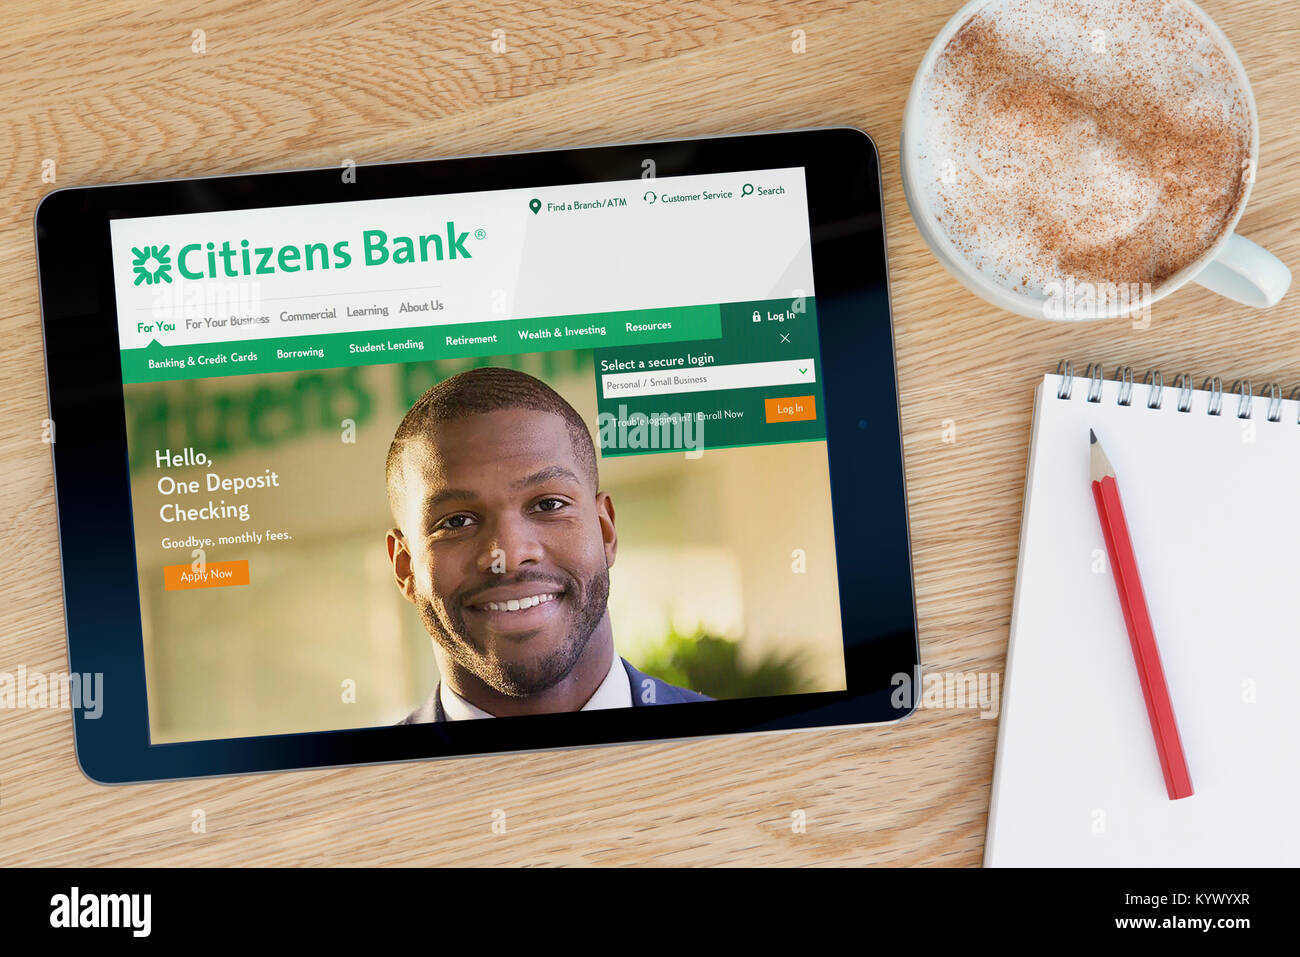 La Citizens Bank Site internet sur une tablette iPad, sur une table en bois à côté d'un bloc-notes, crayon et tasse de café (rédaction uniquement) Banque D'Images